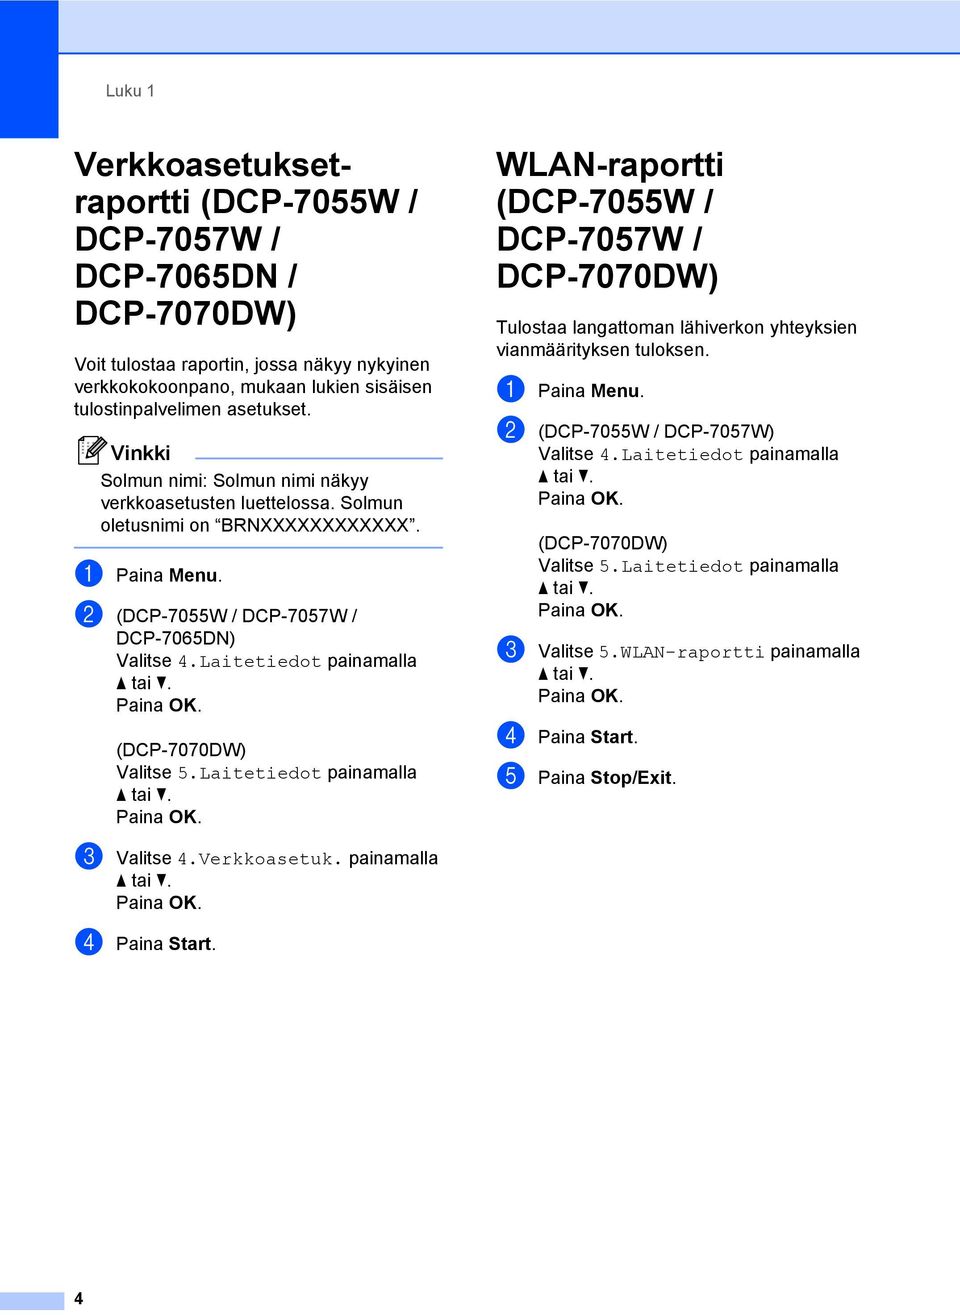 Laitetiedot painamalla (DCP-7070DW) Valitse 5.Laitetiedot painamalla WLAN-raportti (DCP-7055W / DCP-7057W / DCP-7070DW) 1 Tulostaa langattoman lähiverkon yhteyksien vianmäärityksen tuloksen.